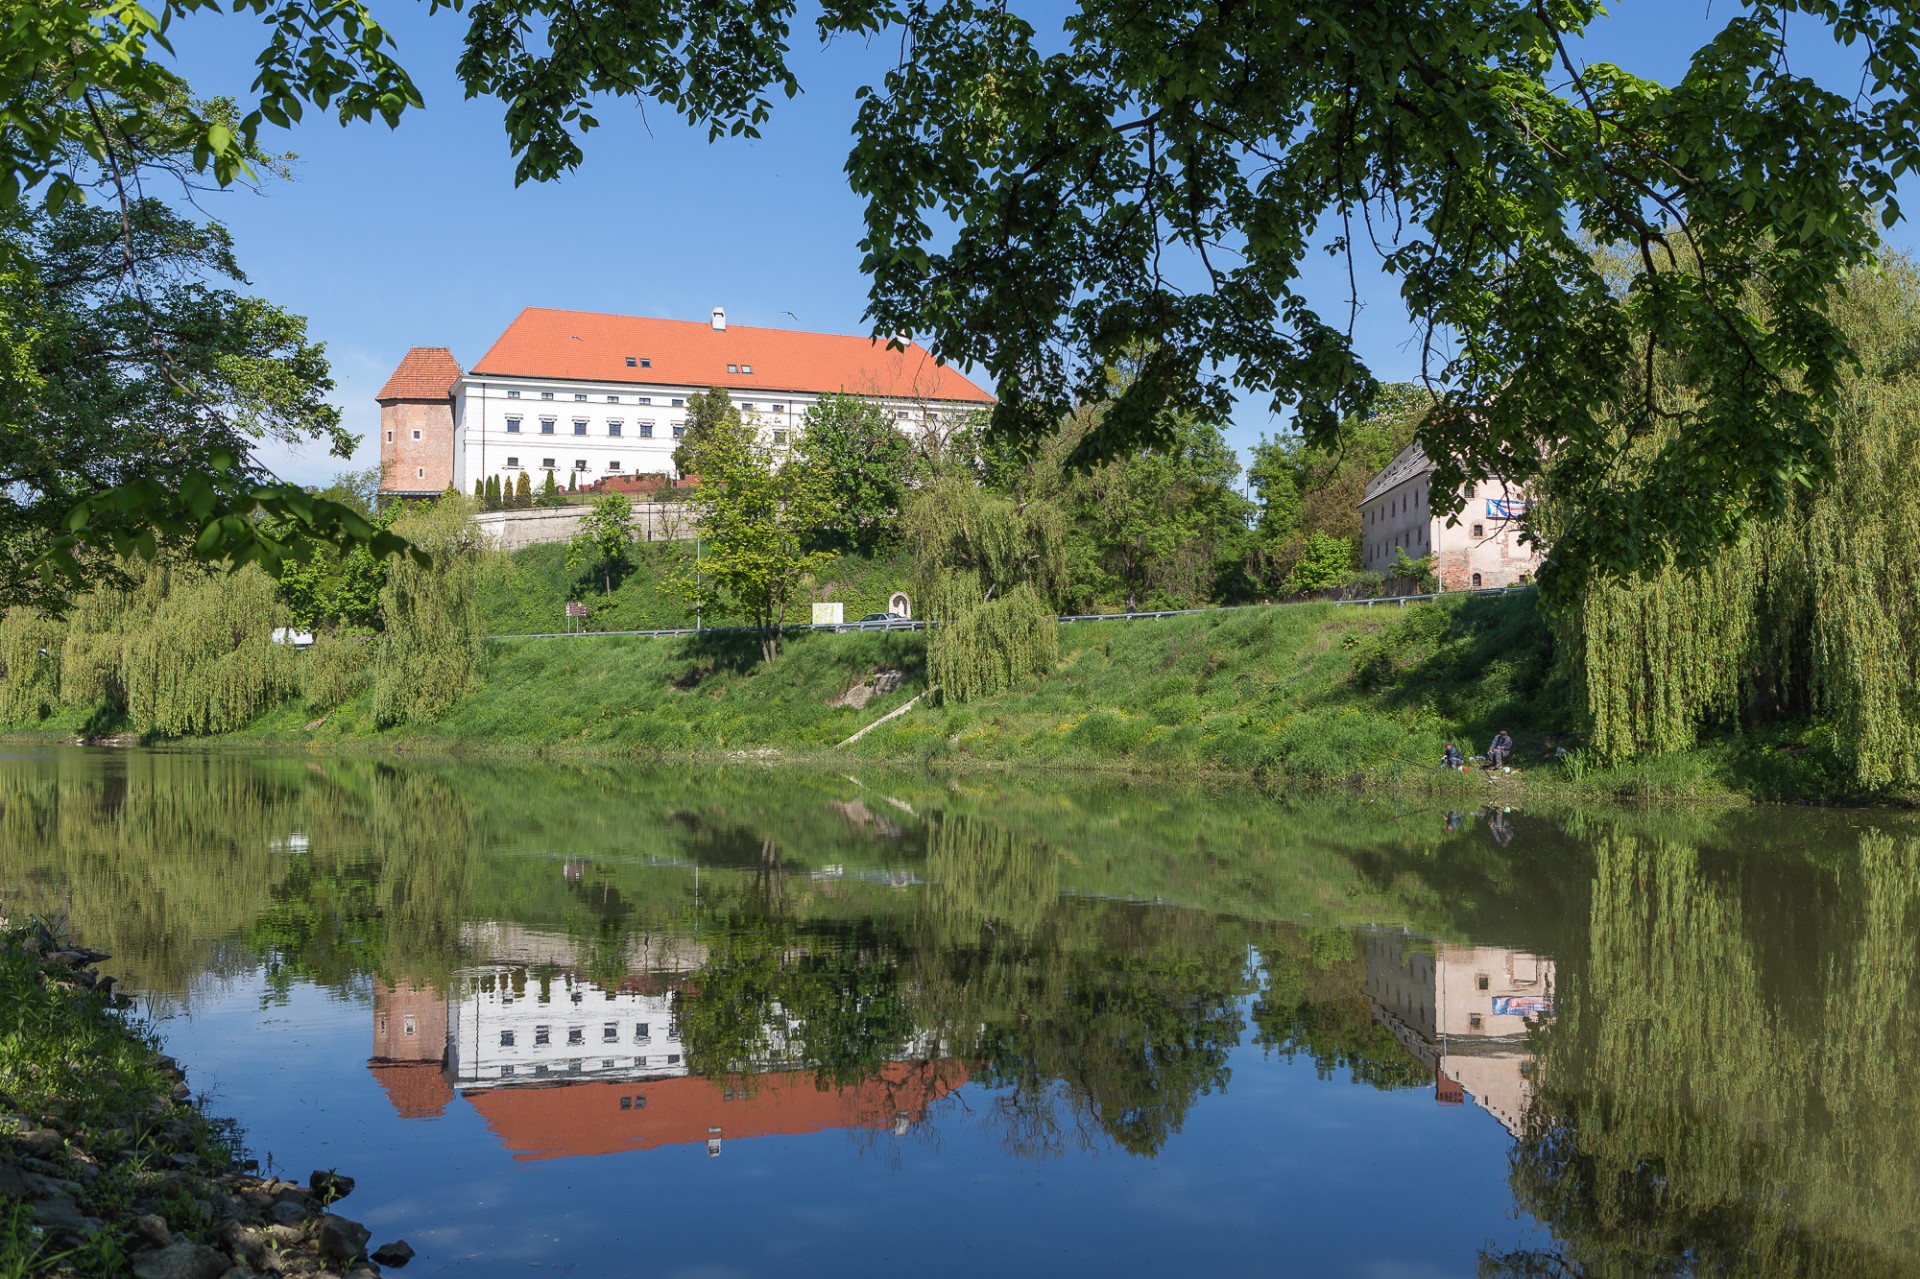 sandomierz-castle-free-stock-photo-public-domain-pictures